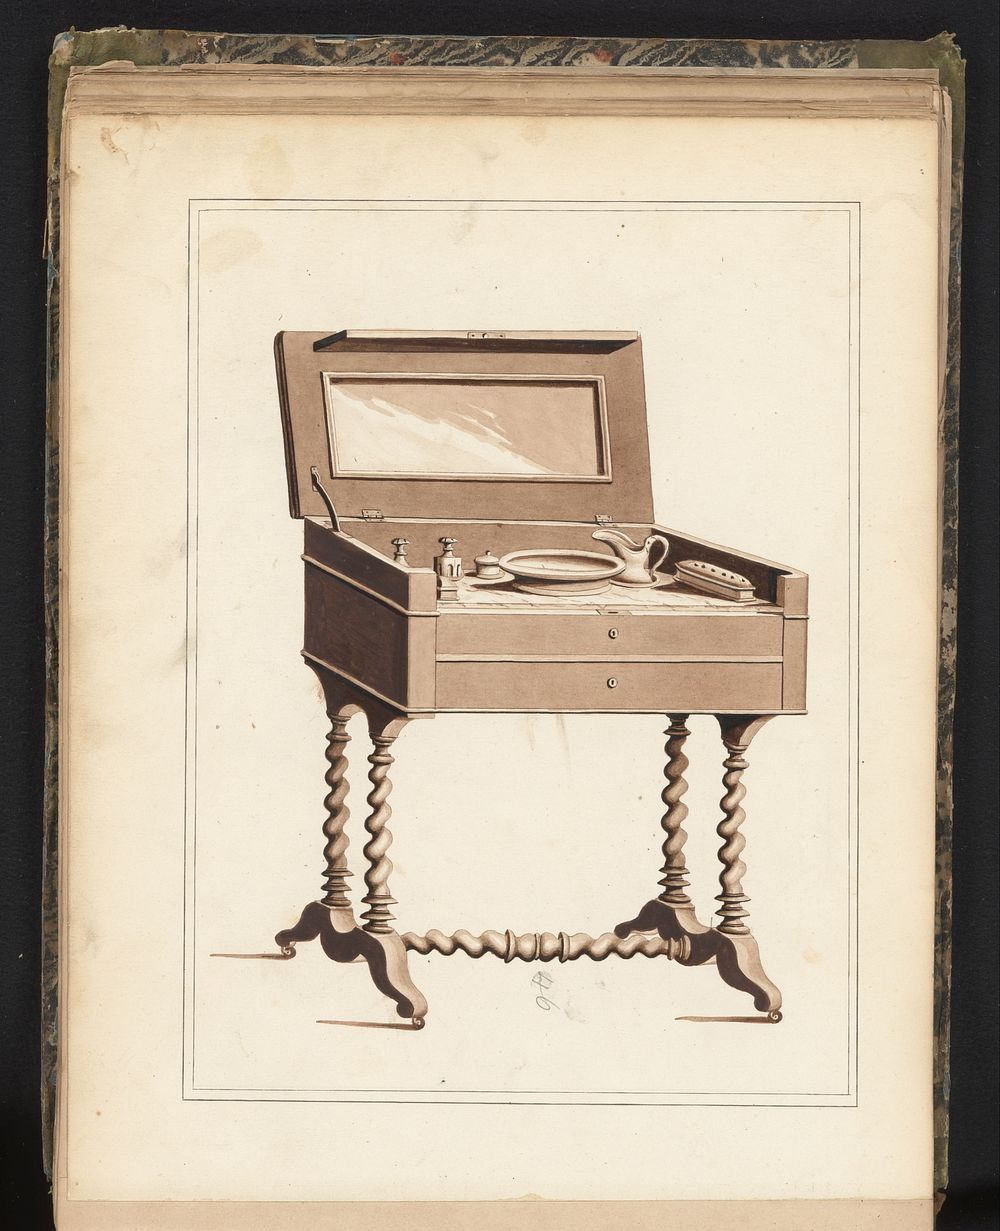 Ontwerp voor een toilettafel voor mannen (c. 1825 - c. 1839) by anonymous